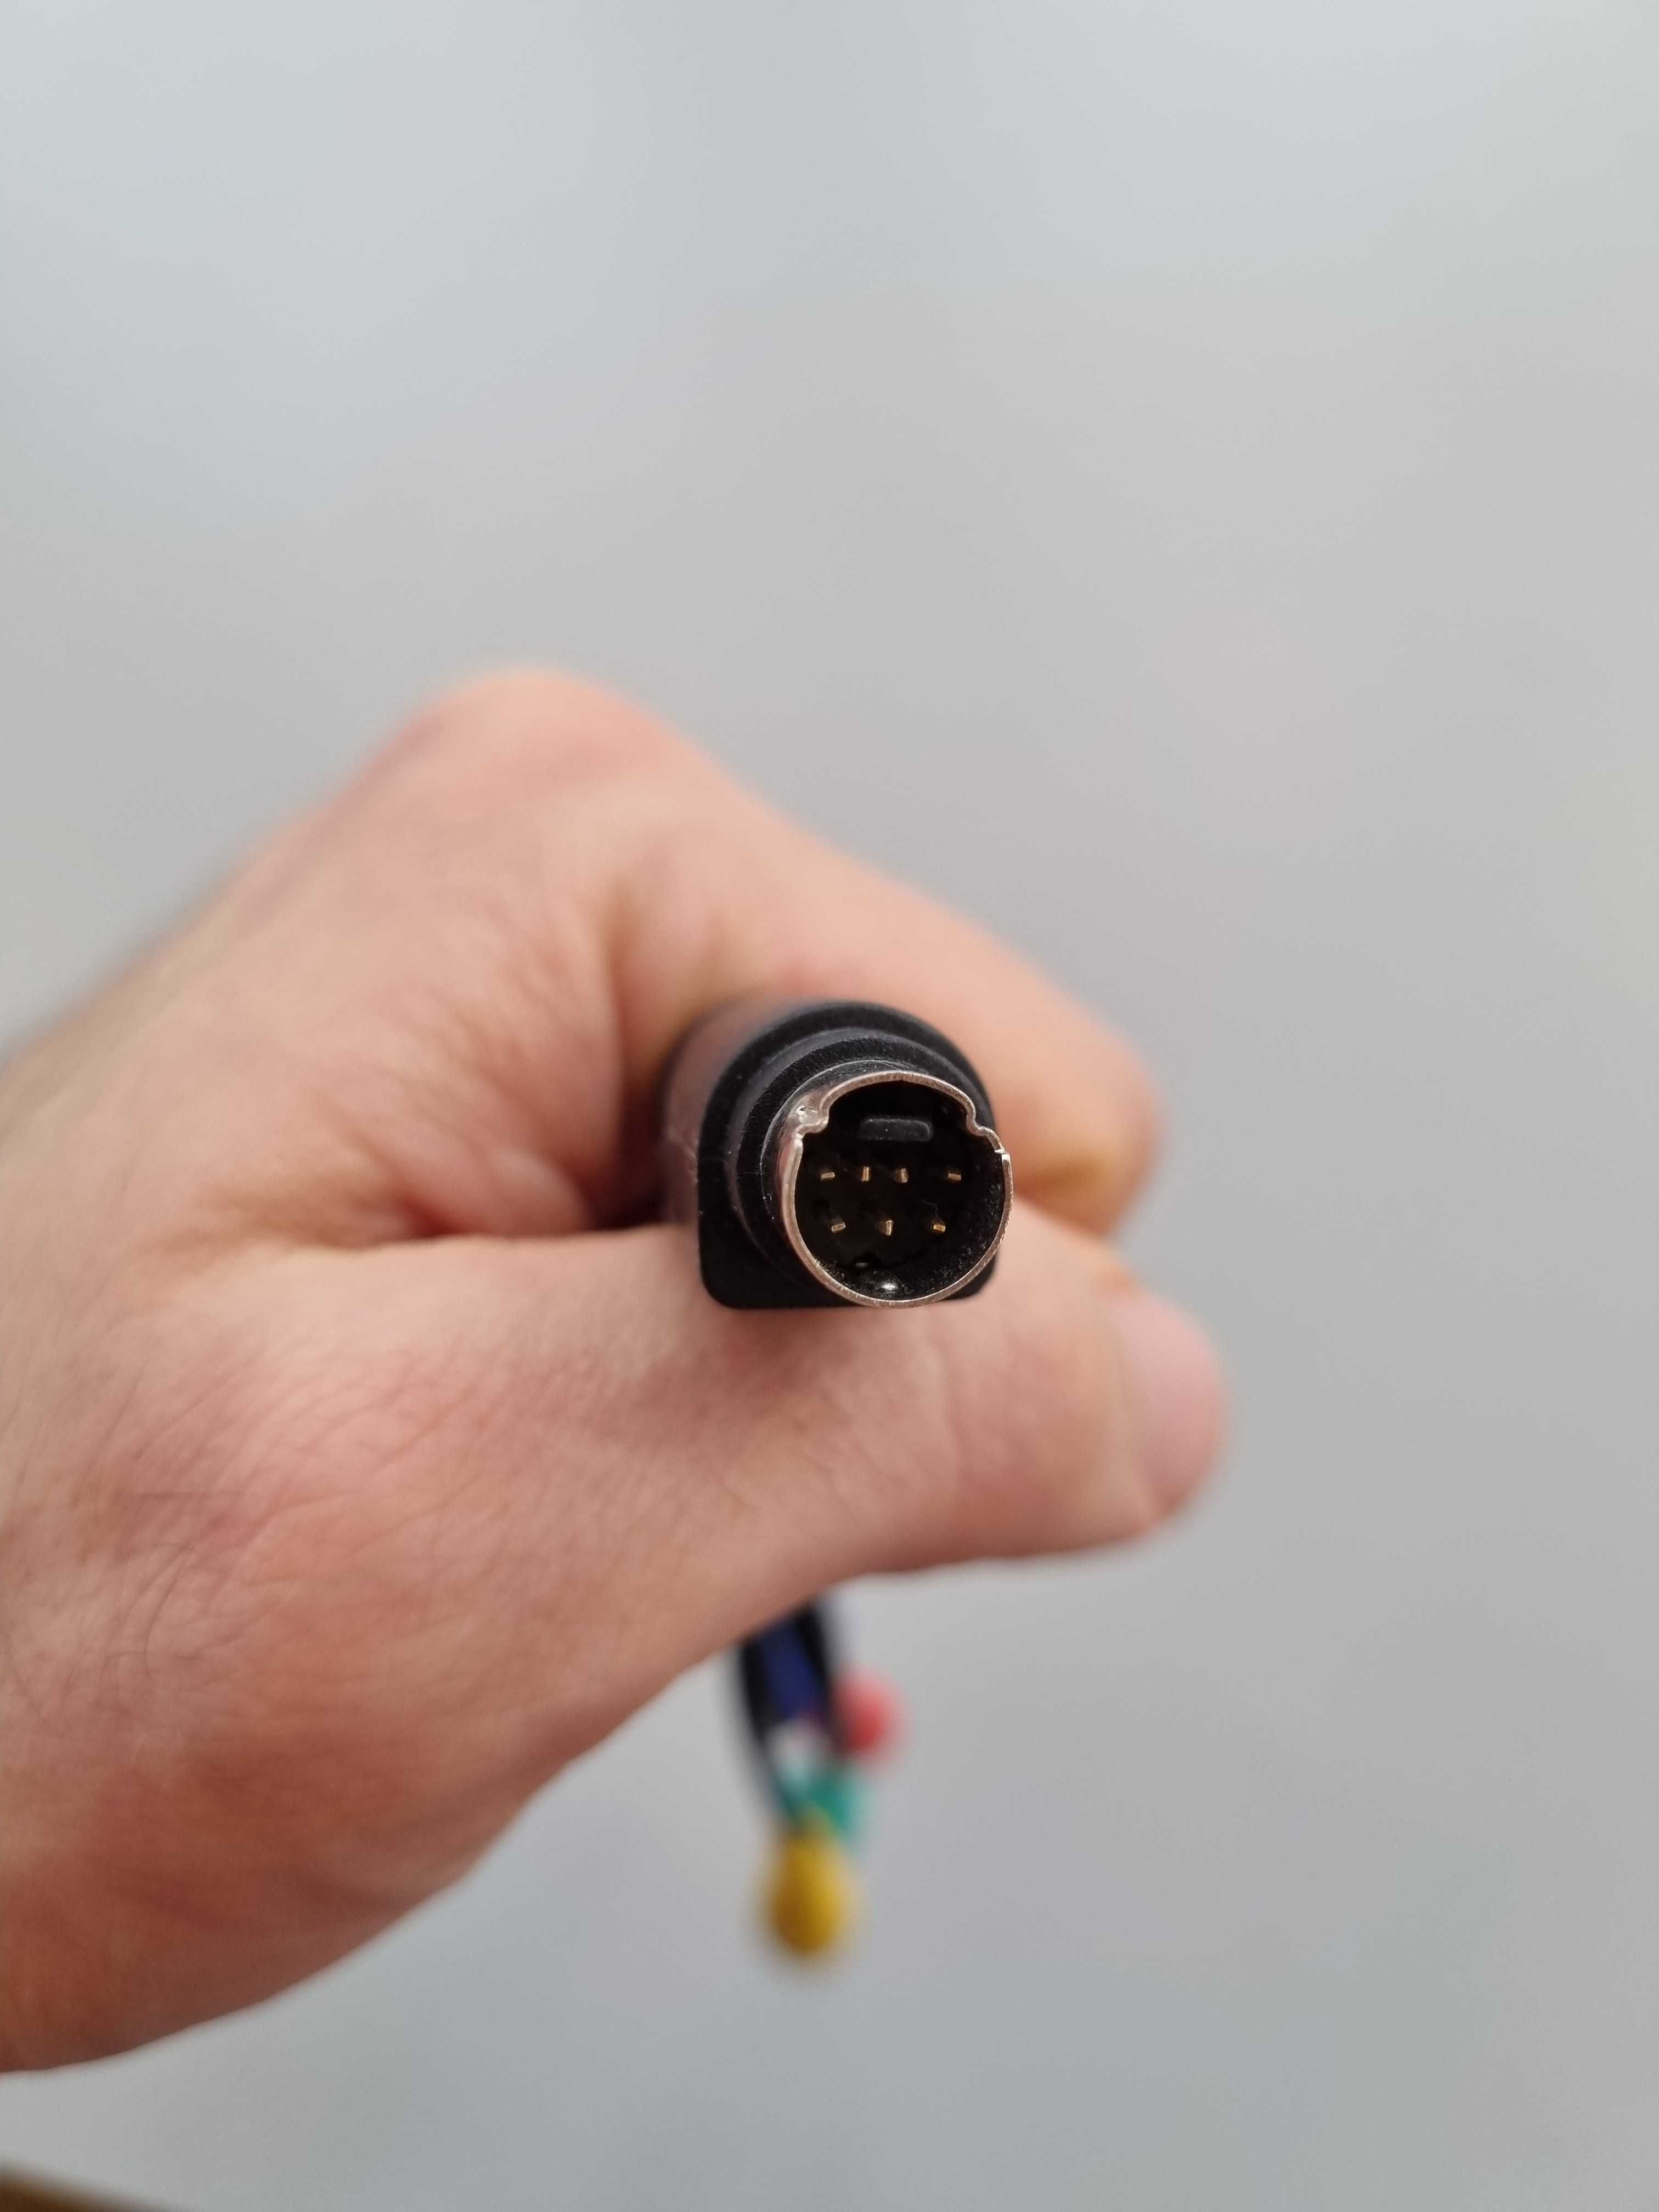 Cablu usb UC-36 la 2 si 3 rca, 7 pin mini din s-video la 4 rca etc